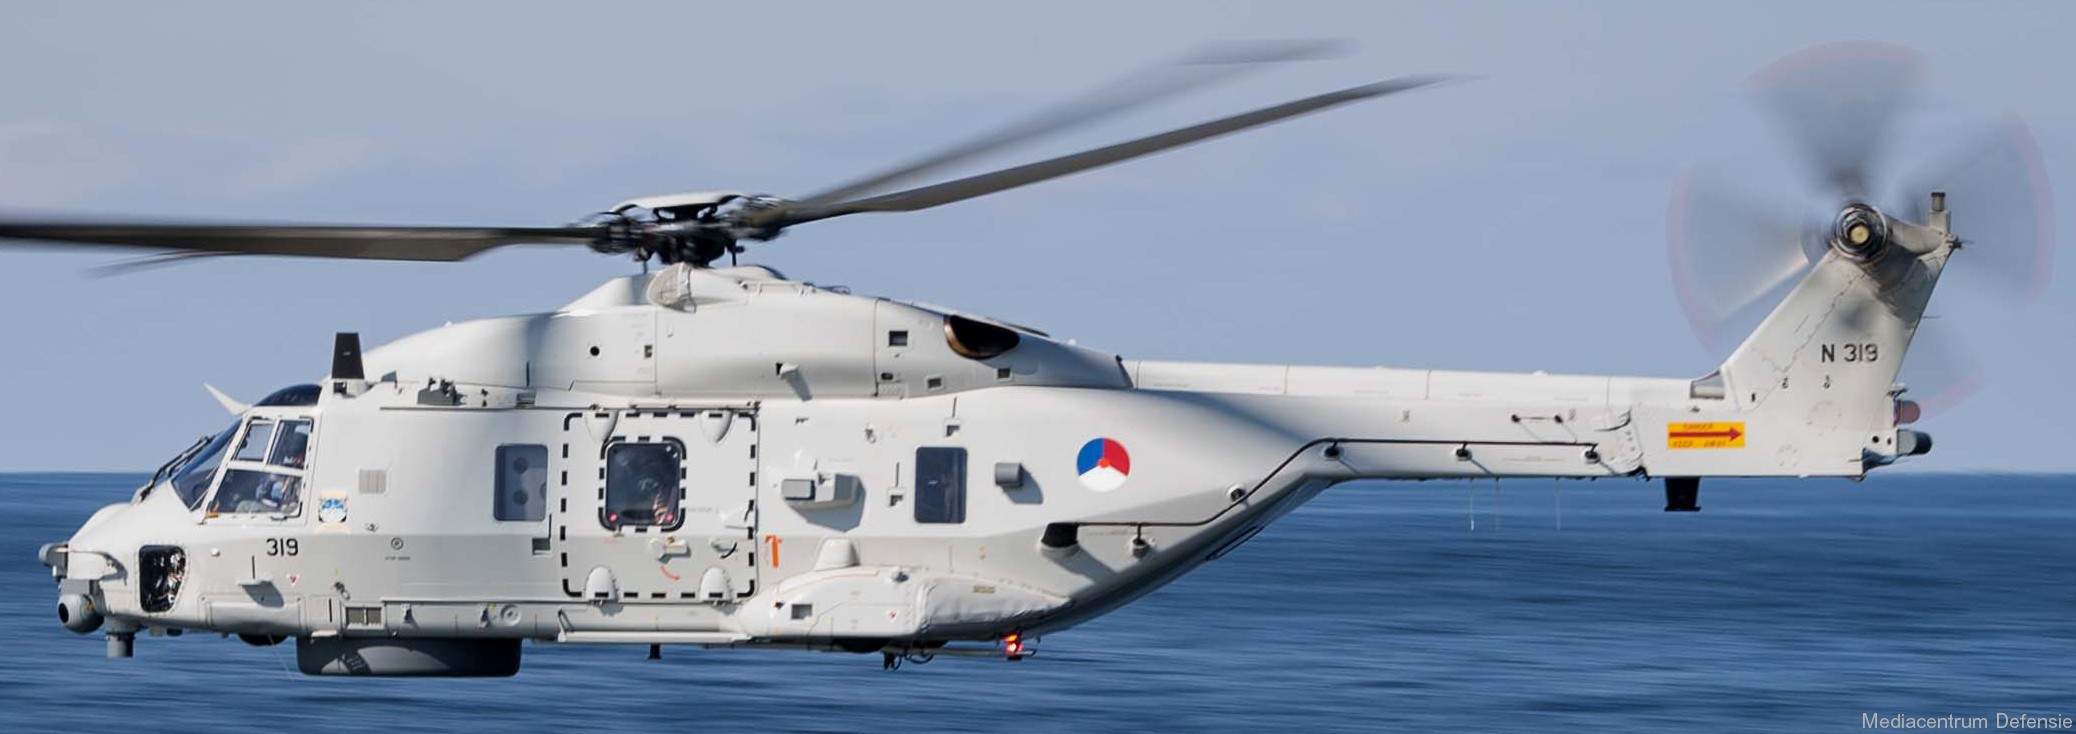 nh90 nfh helicopter royal netherlands navy koninklijke marine n-319 16